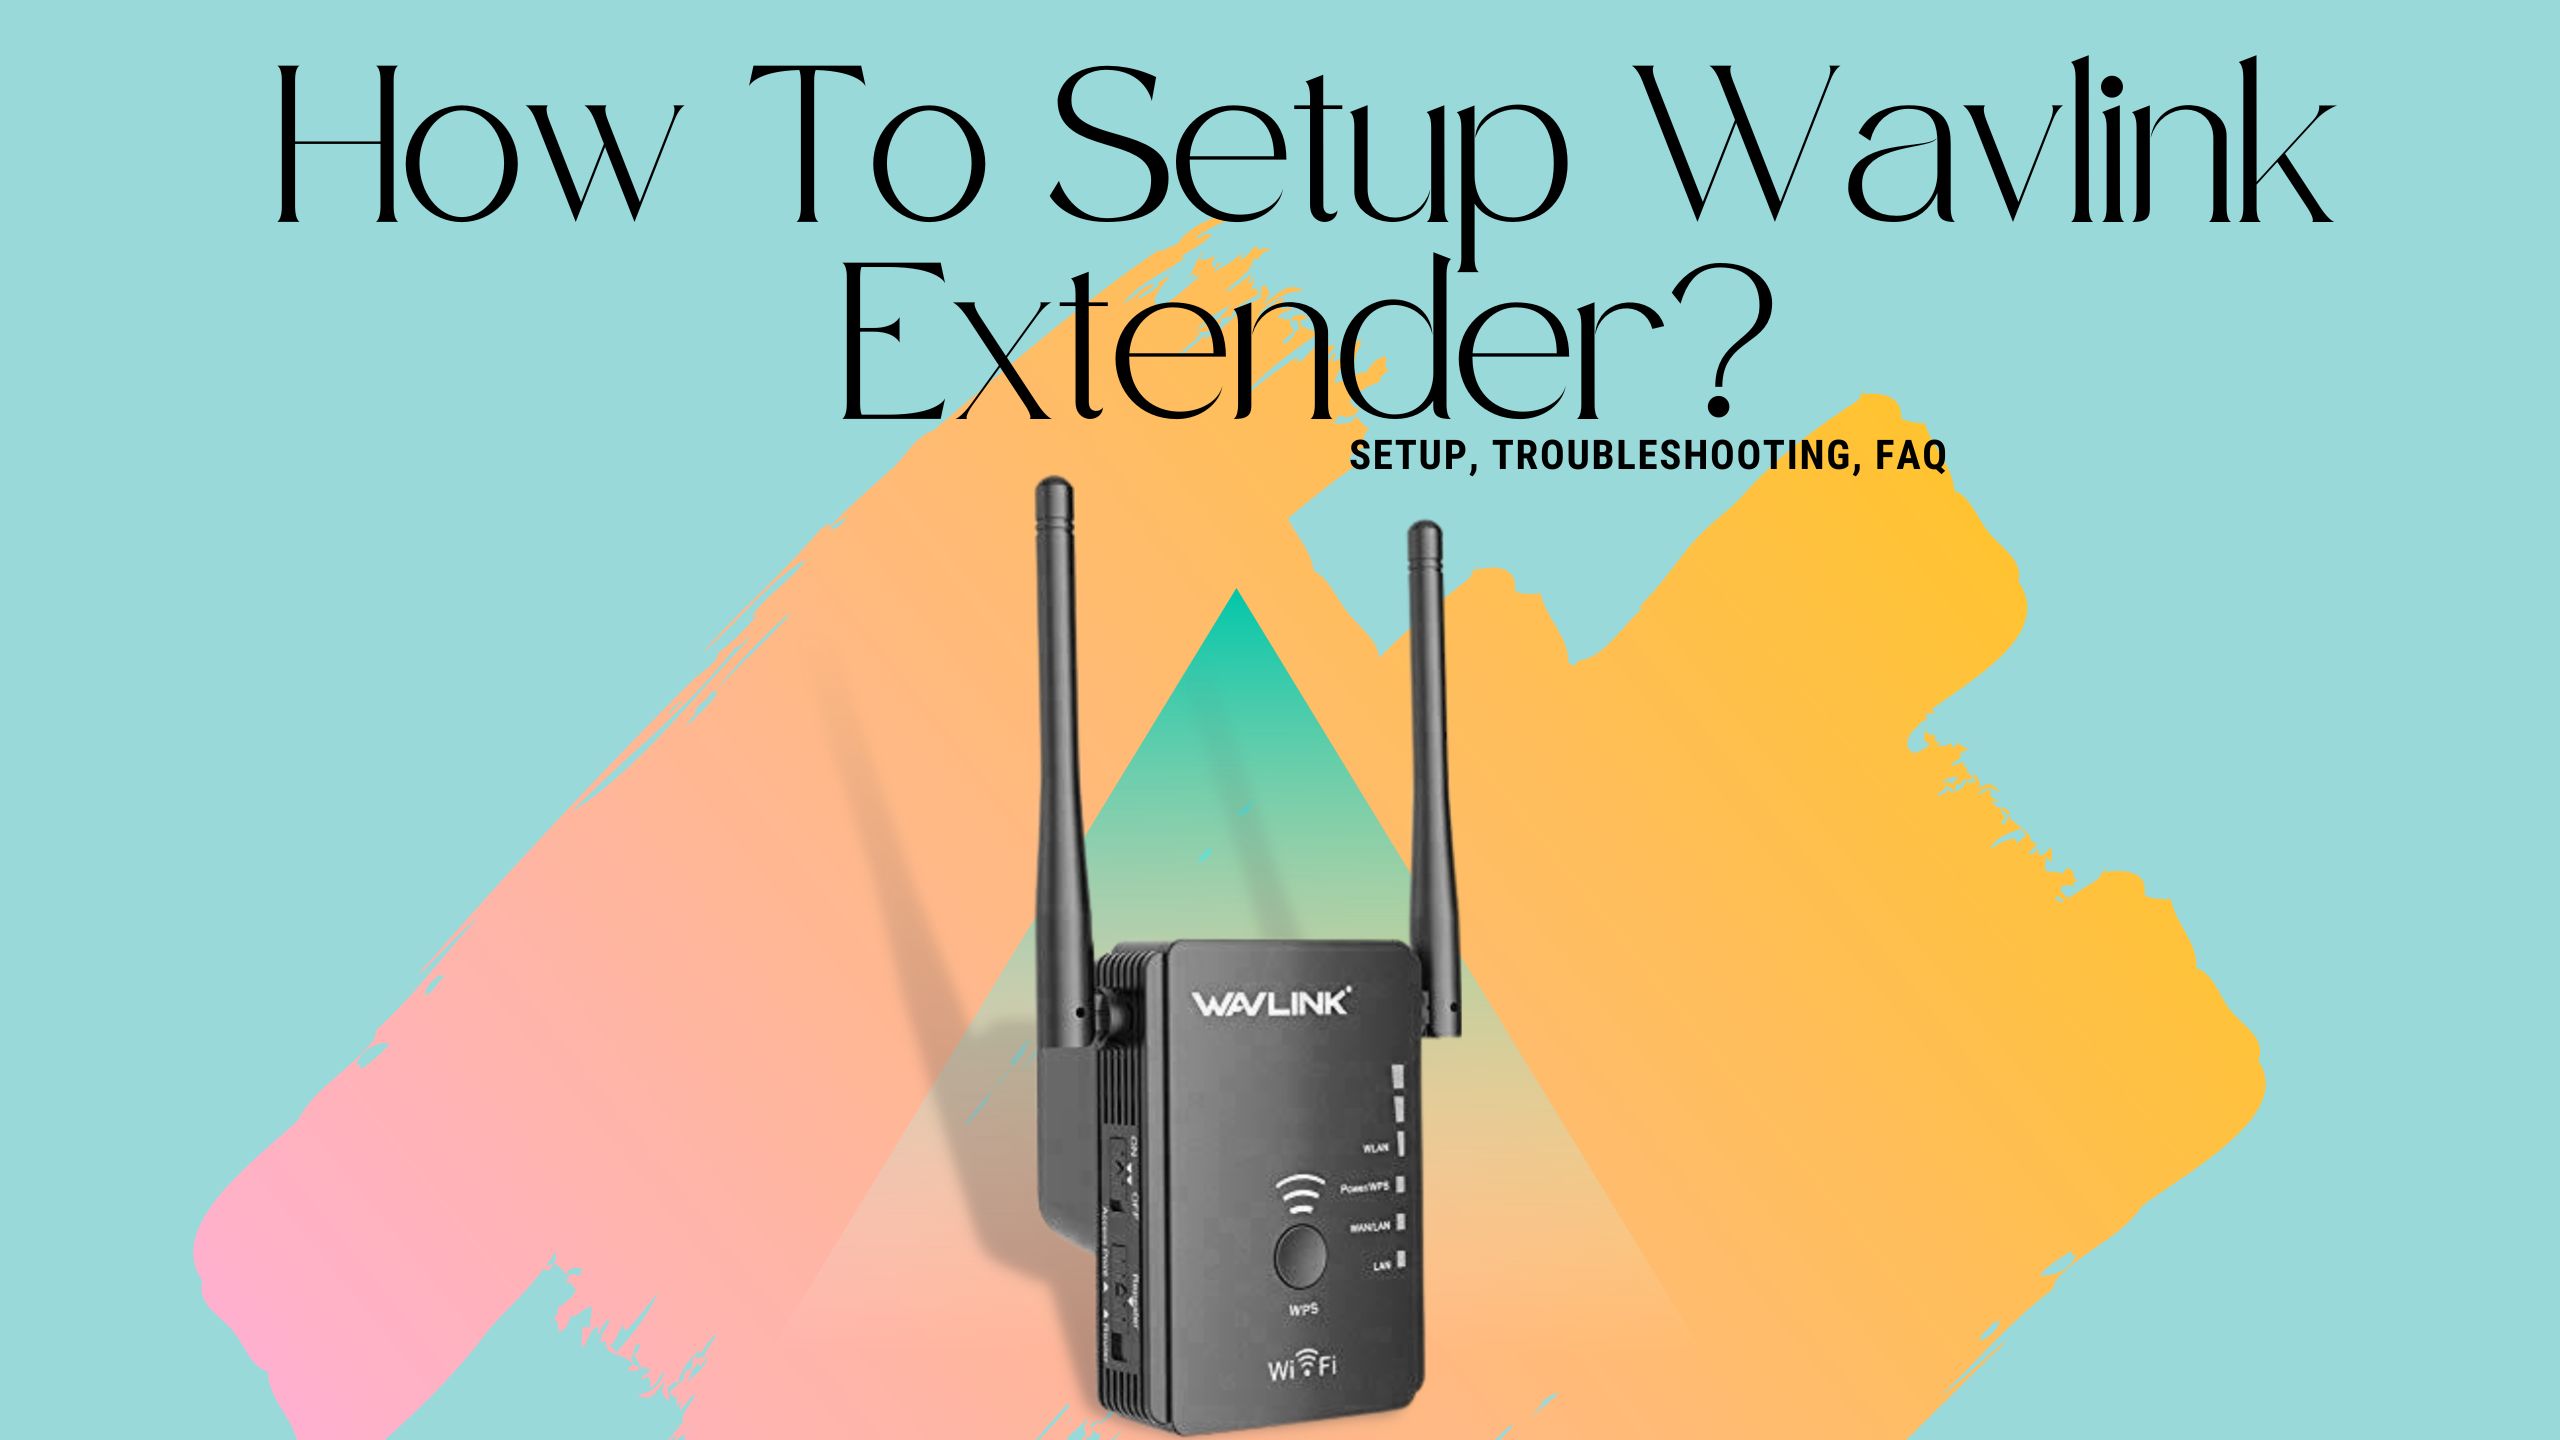 How to Setup Wavlink WiFi Extender using Wifi.wavlink.com?